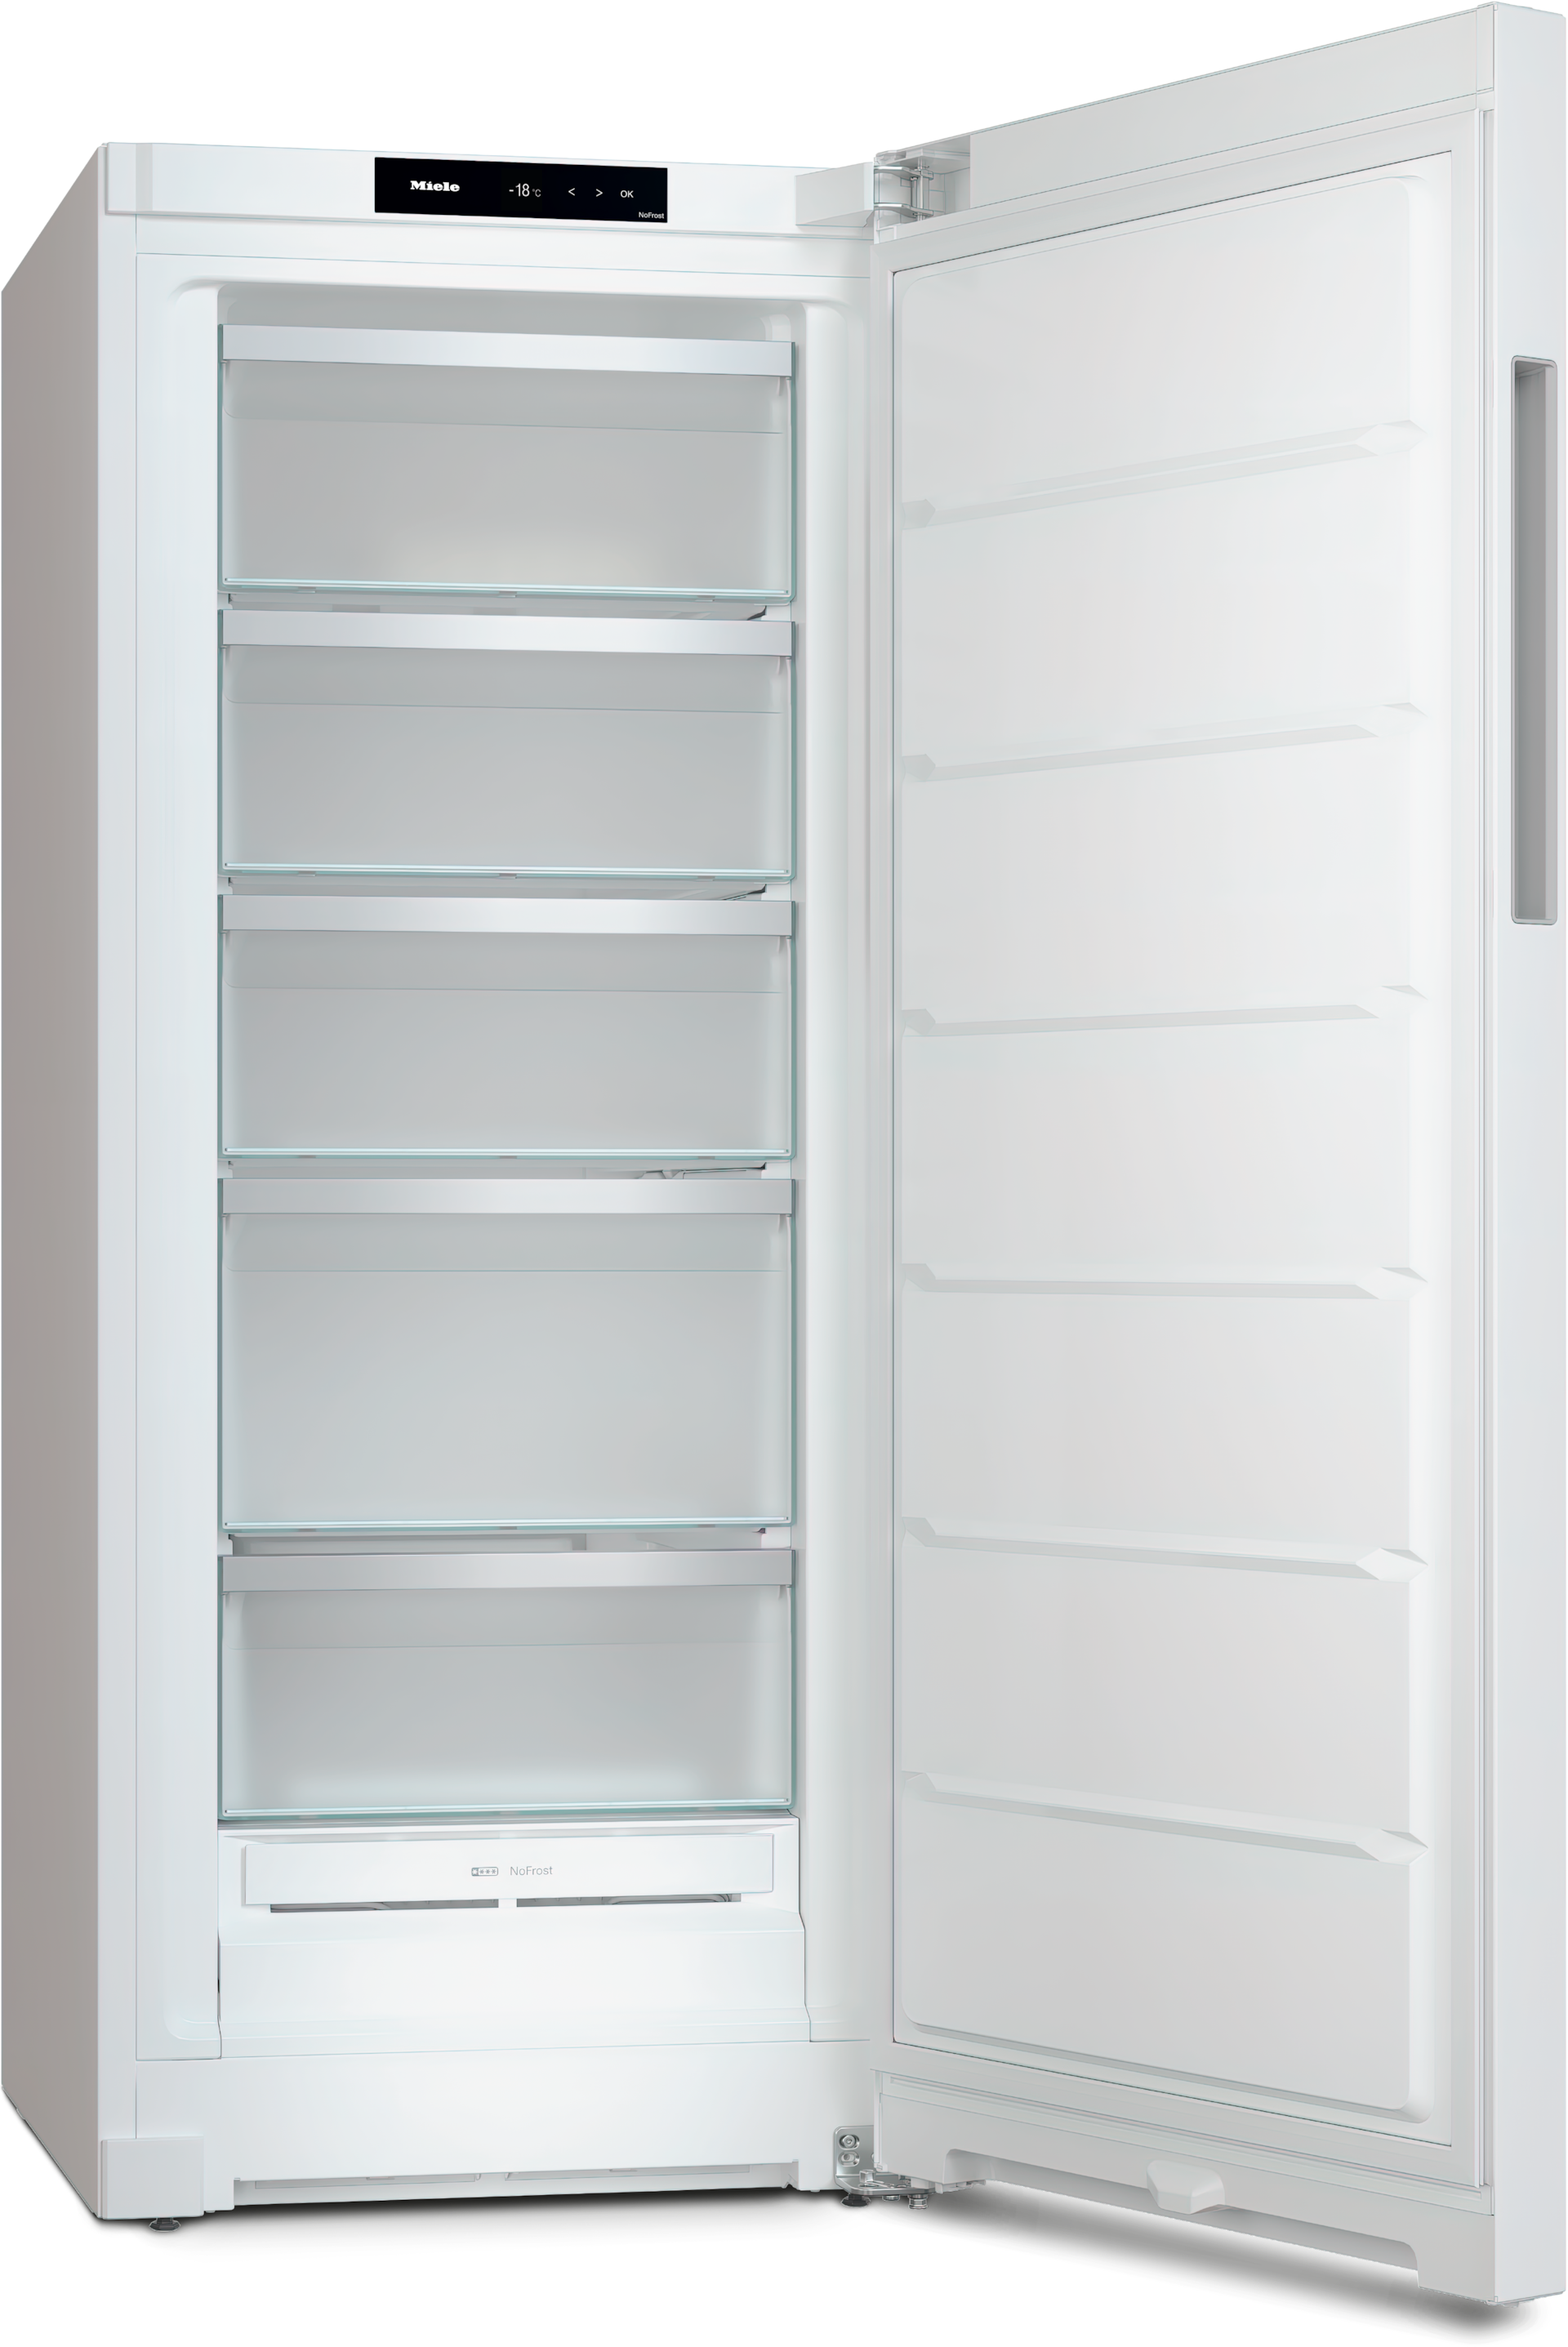 Refrigeration - FN 4322 E White - 3